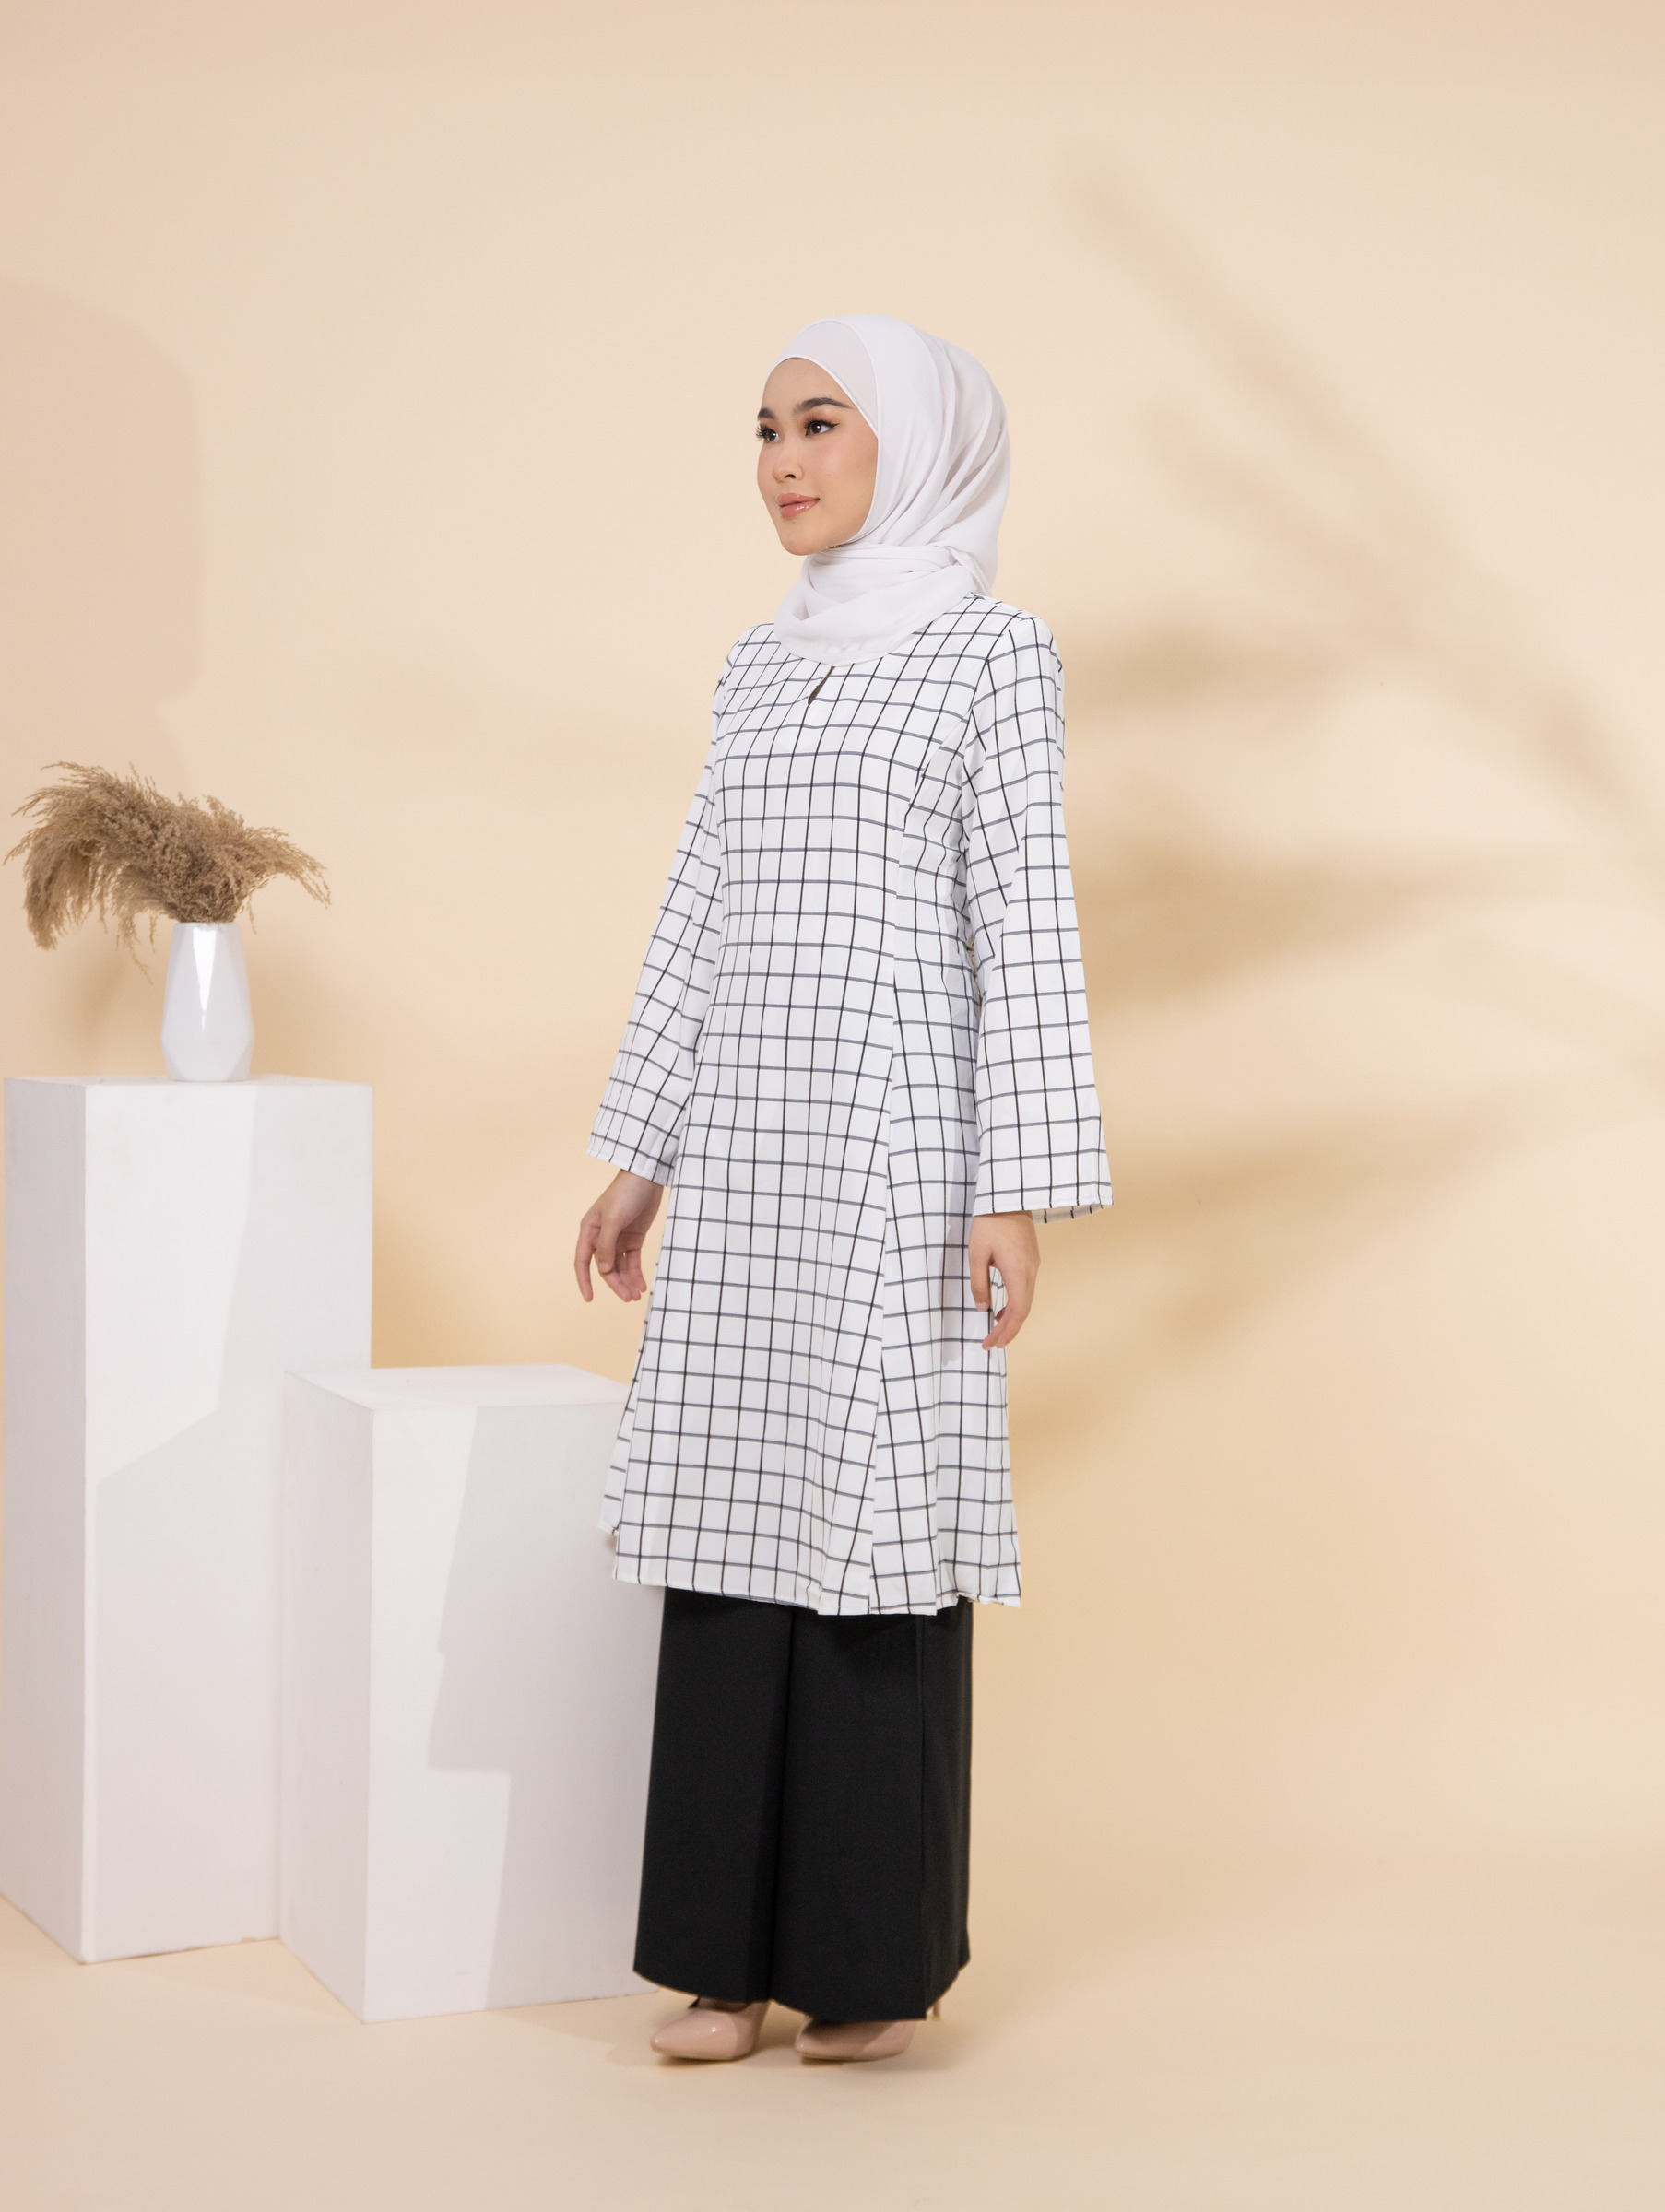 haura-wear-akasia-kurung-kebarung-raya-muslimah-long-sleeve-baju-skirt-kain-perempuan-baju-sepasang (7).jpg